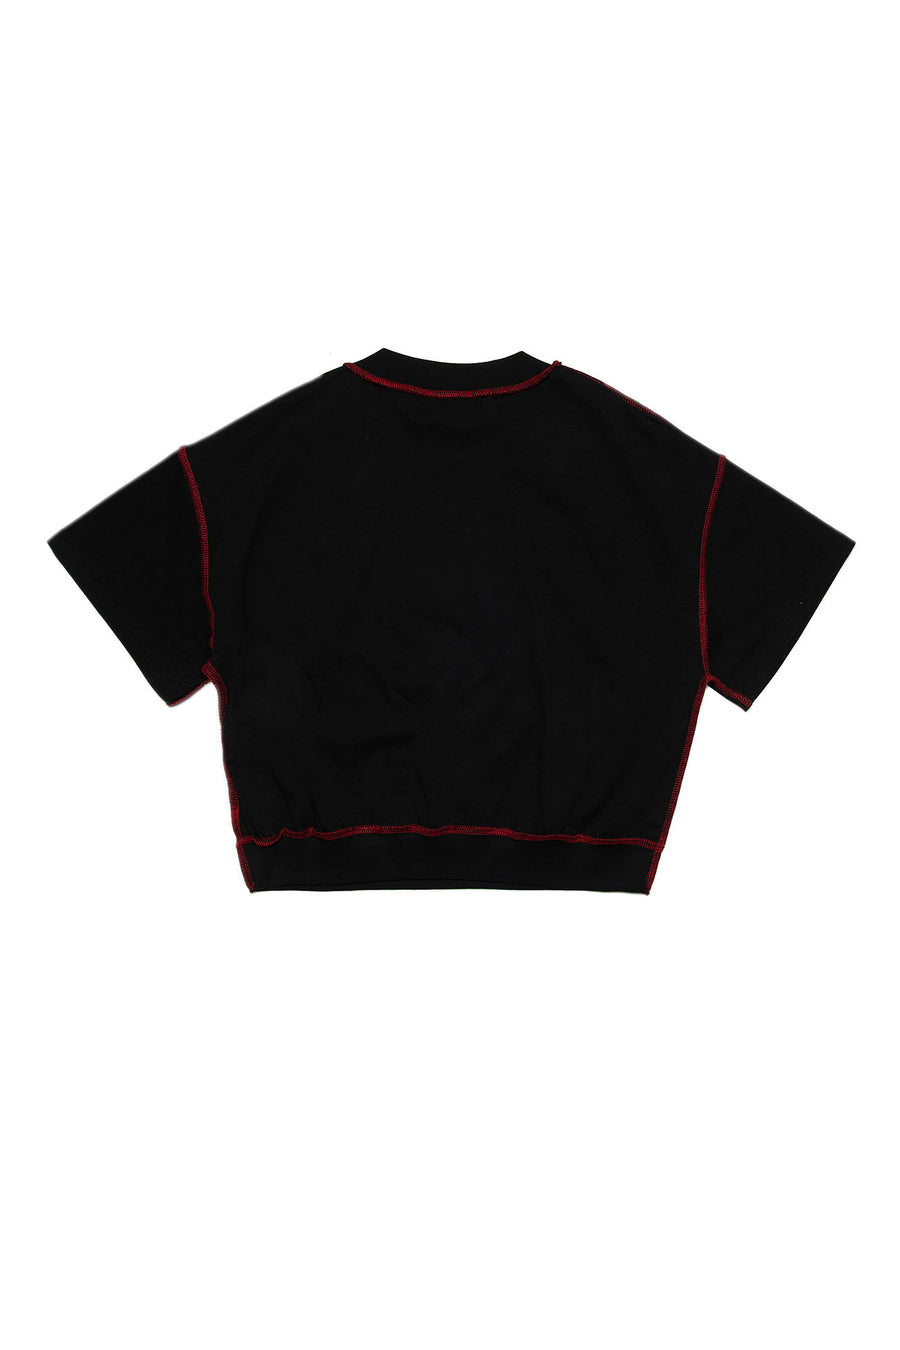 Stitch black t-shirt by Diesel